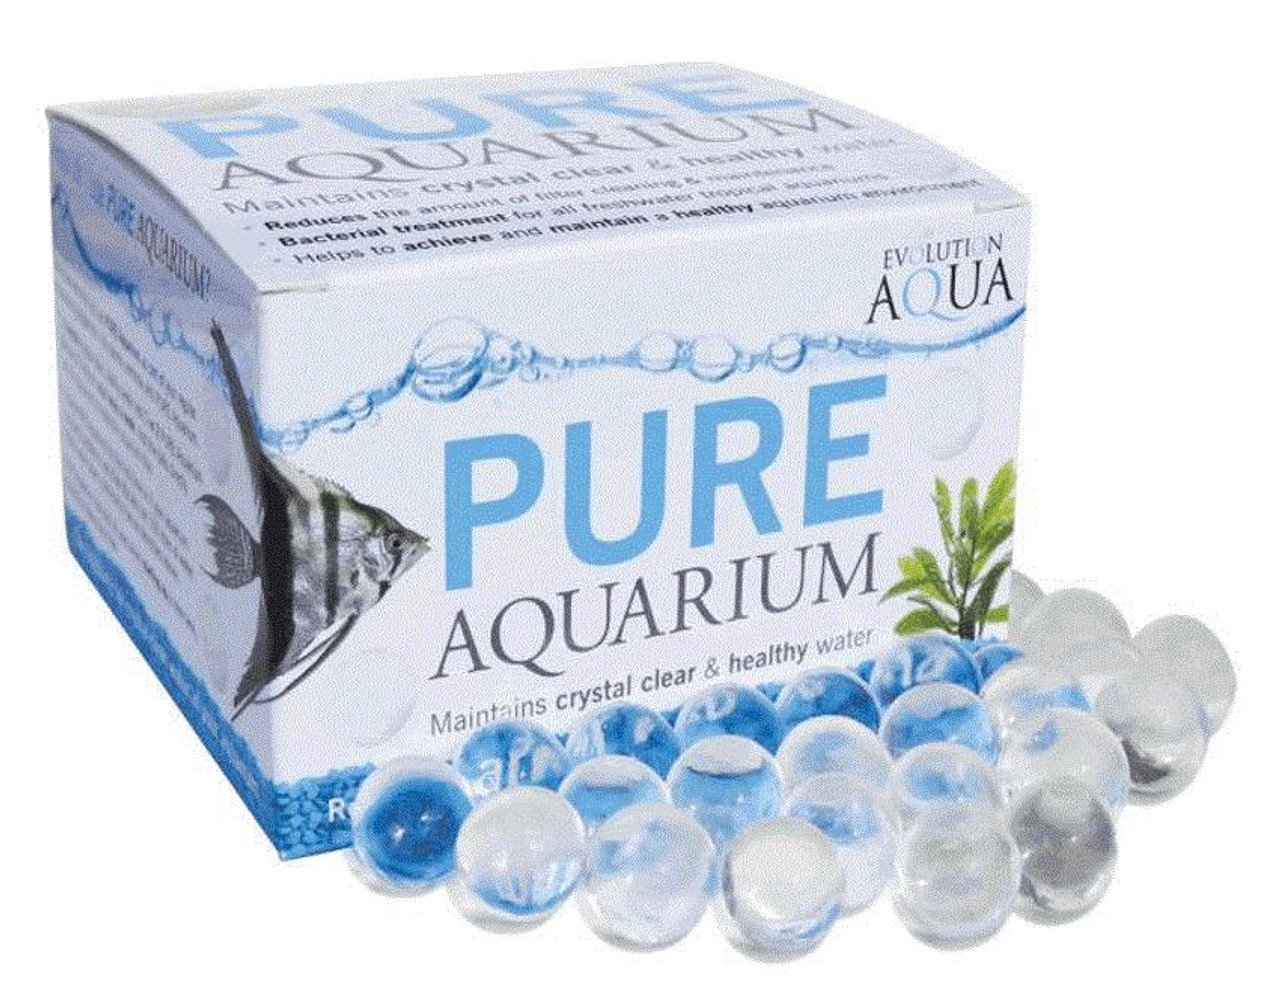 Evolution Aqua Pure Aquarium 50 balls x 3 Packs